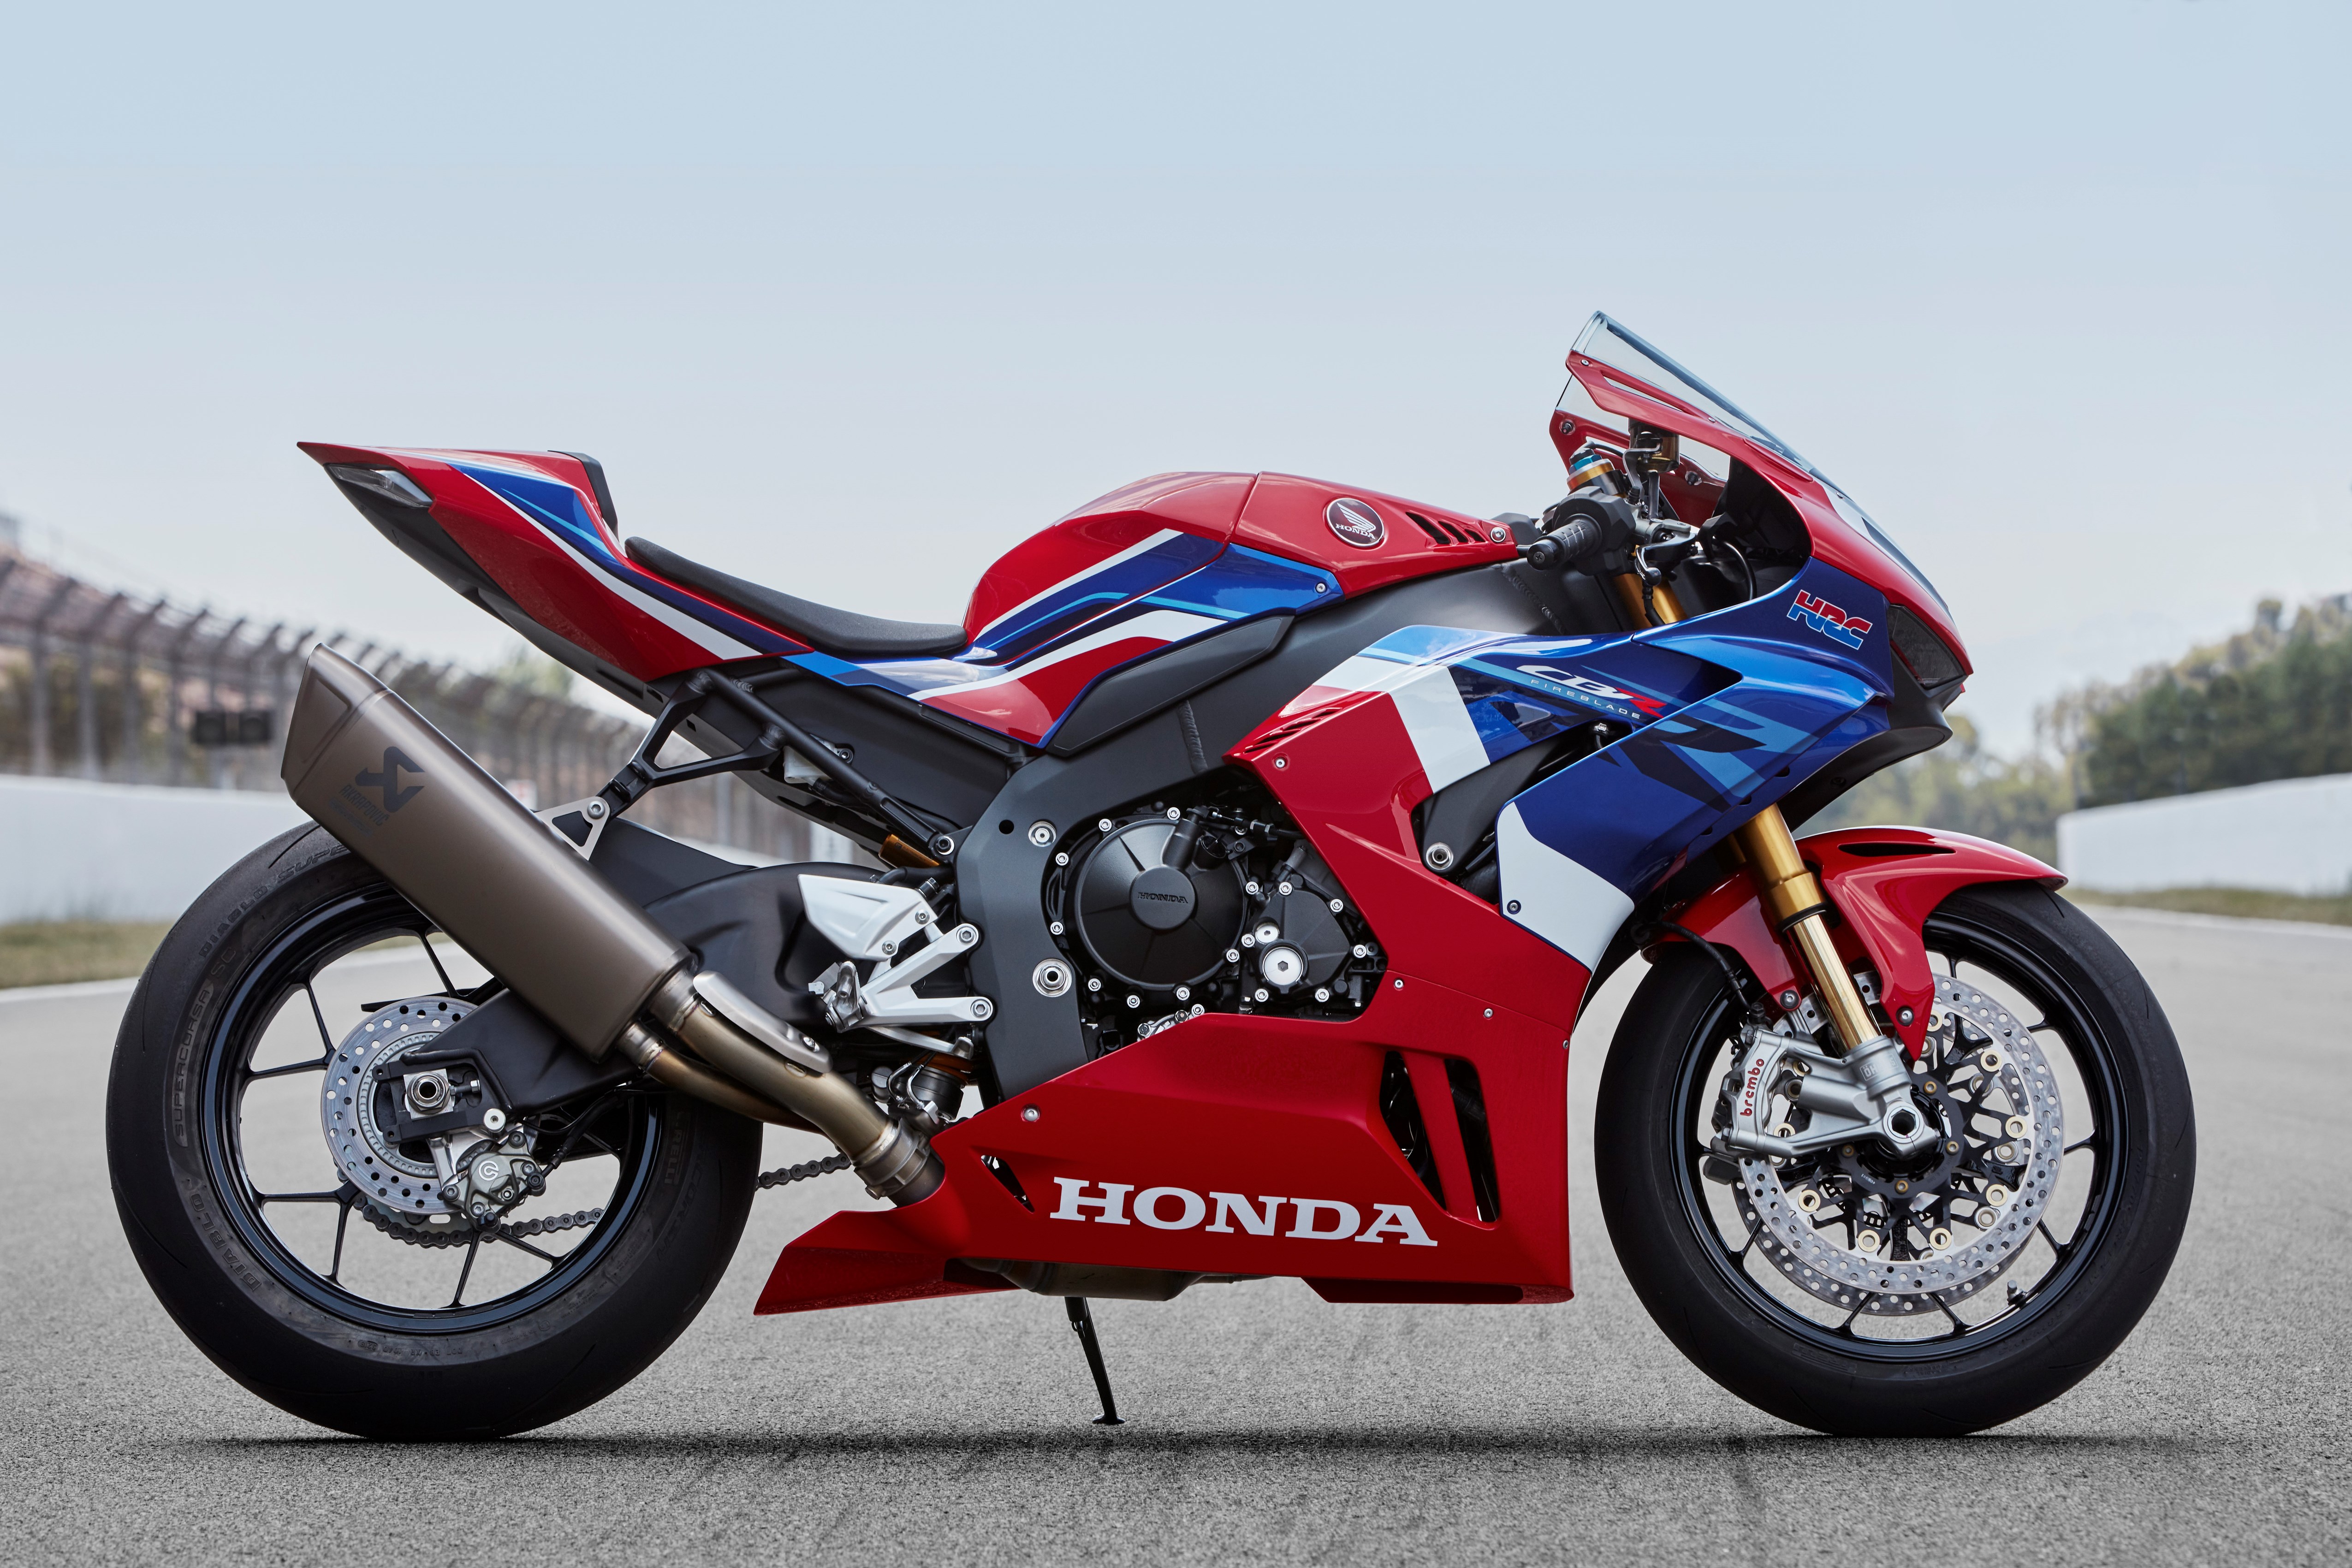 Honda CBR150R 2021 CÓ CẠNH TRANH ĐƯỢC VỚI YAMAHA R15V3  Tin tức iMotorbike